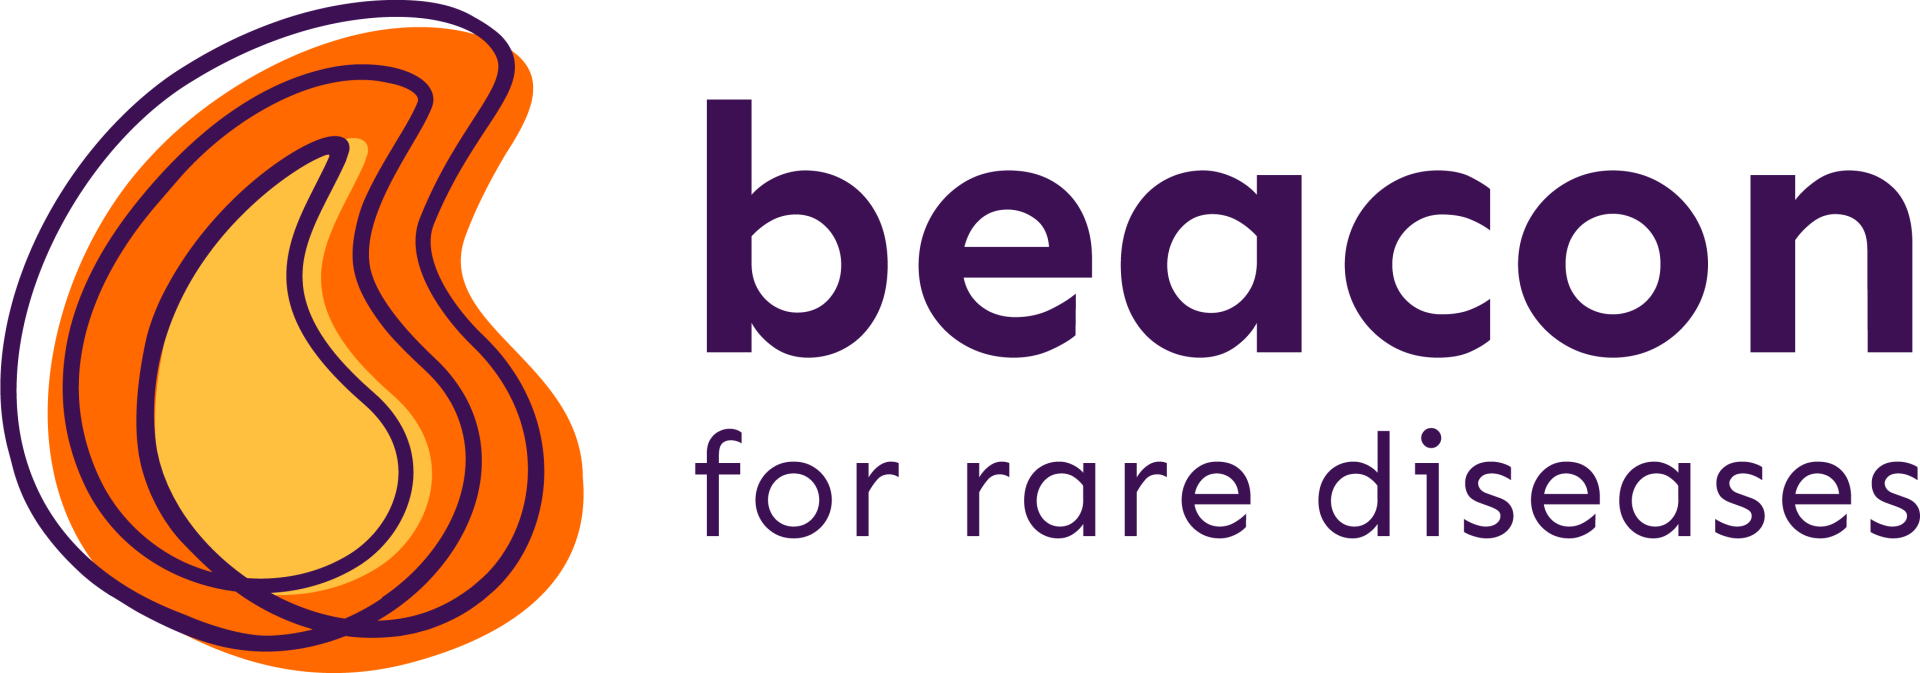 Beacon for rare diseases logo